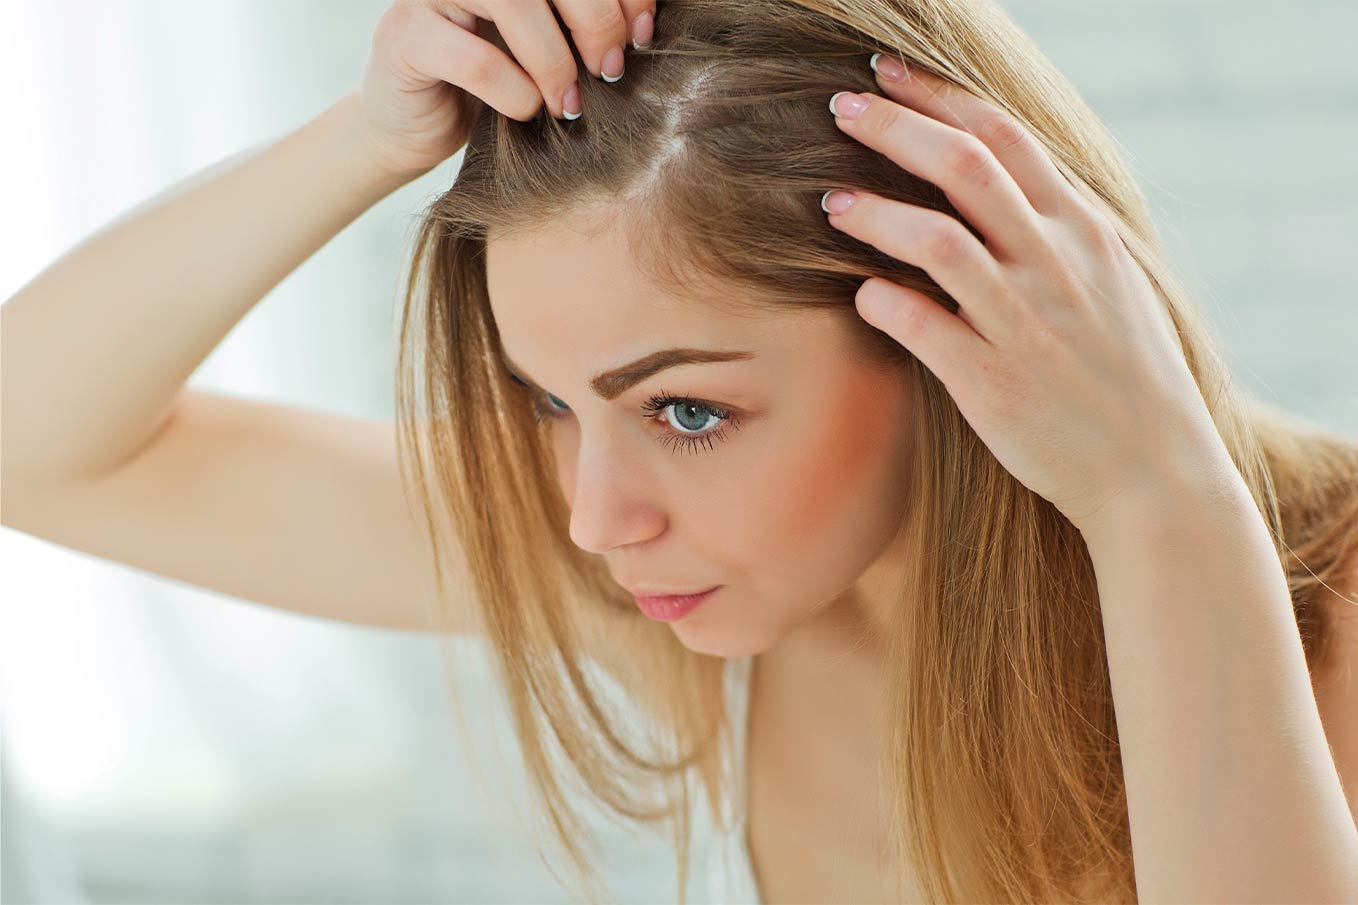 Queda de cabelos acentuada: um problema recorrente na quarentena